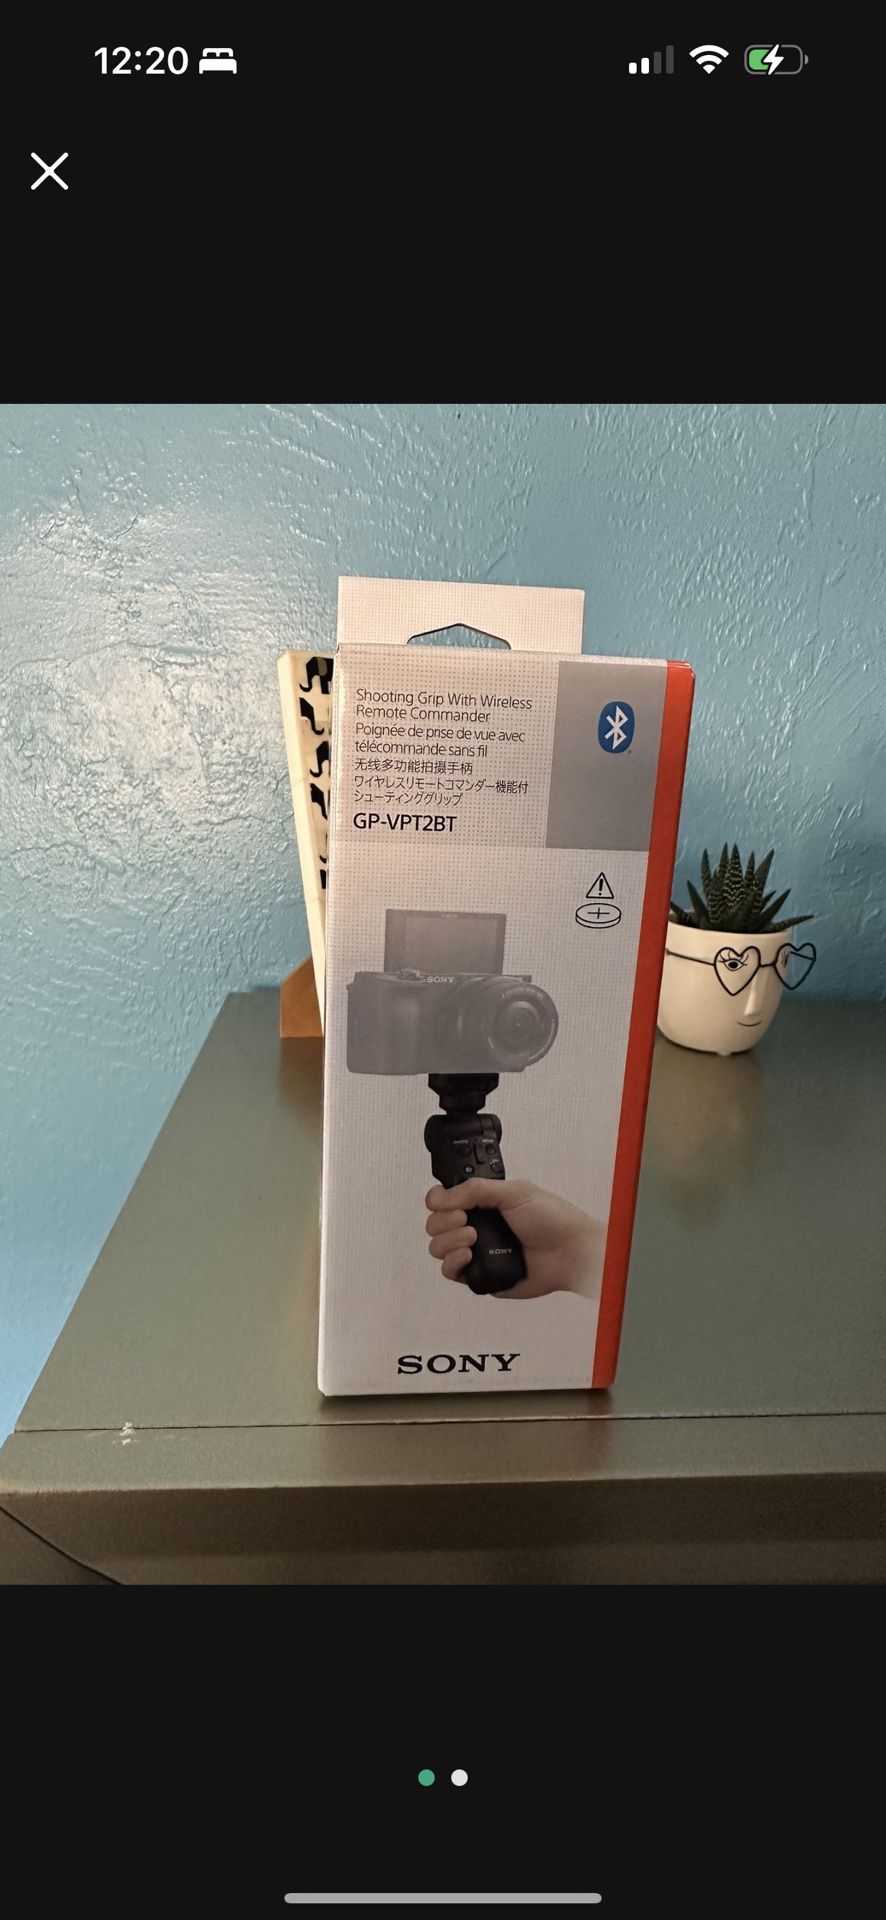 Sony camera holder